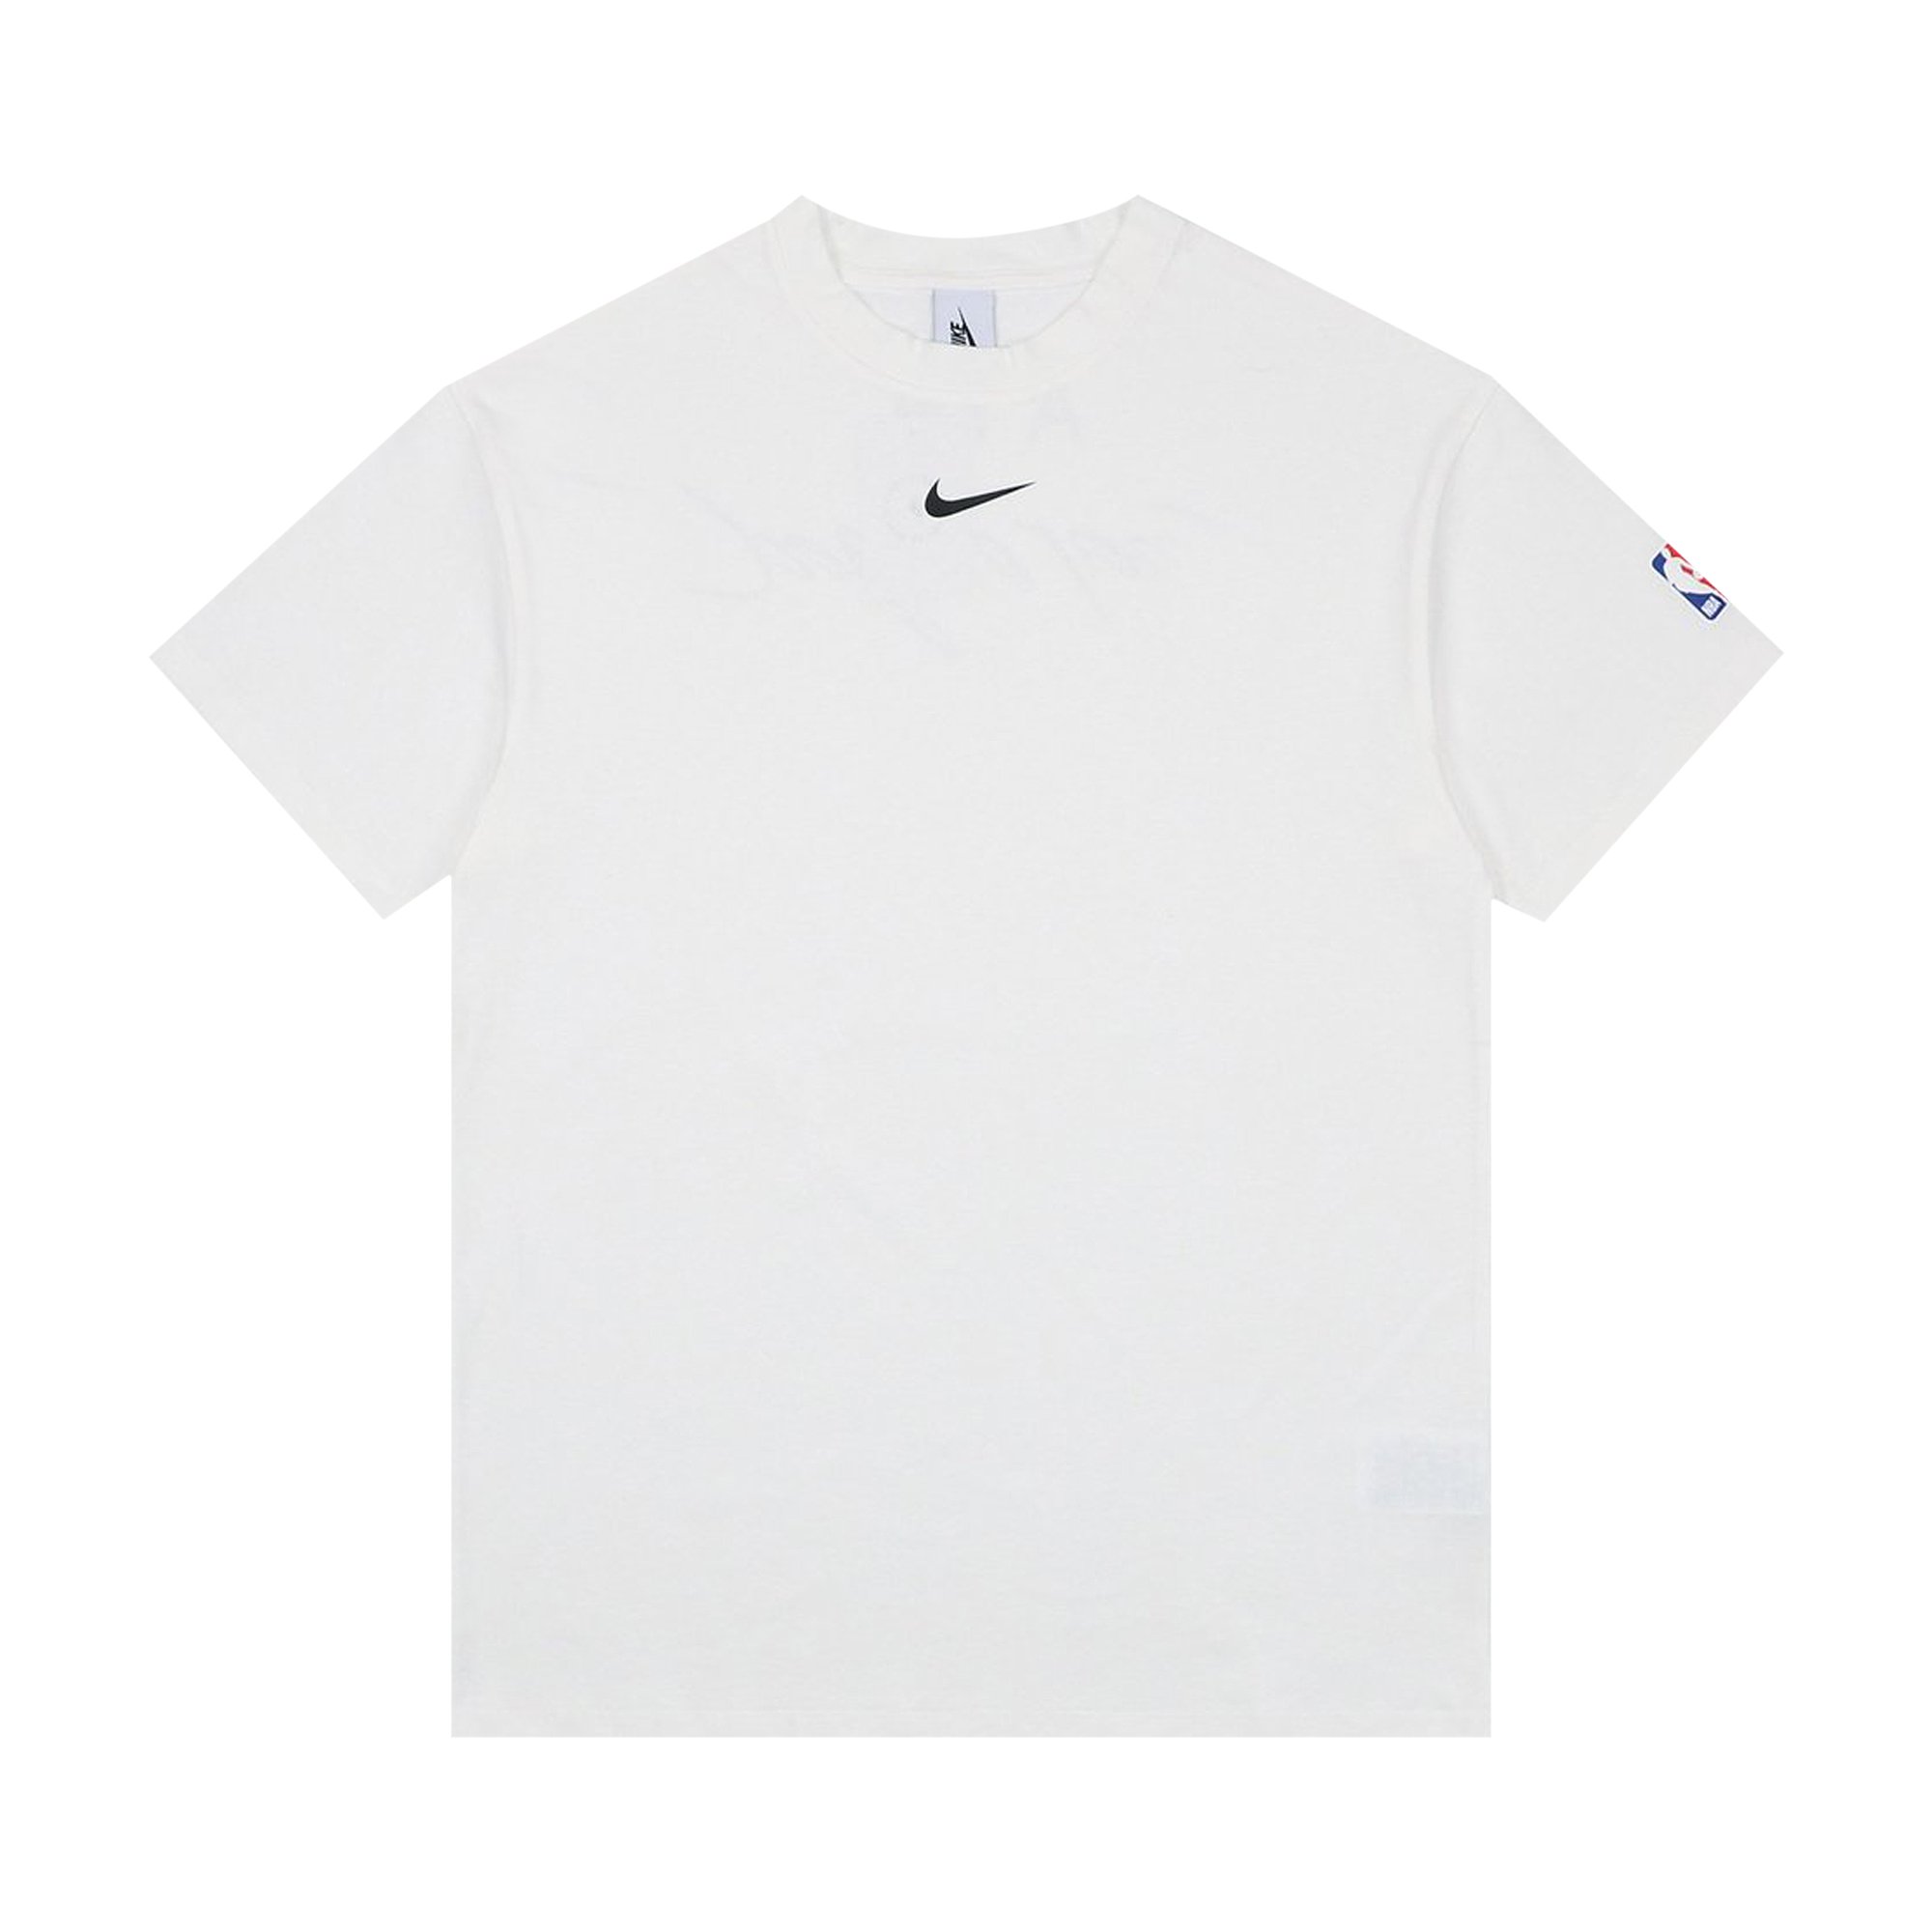 Nike x Fear of God Air T-Shirt 'White'